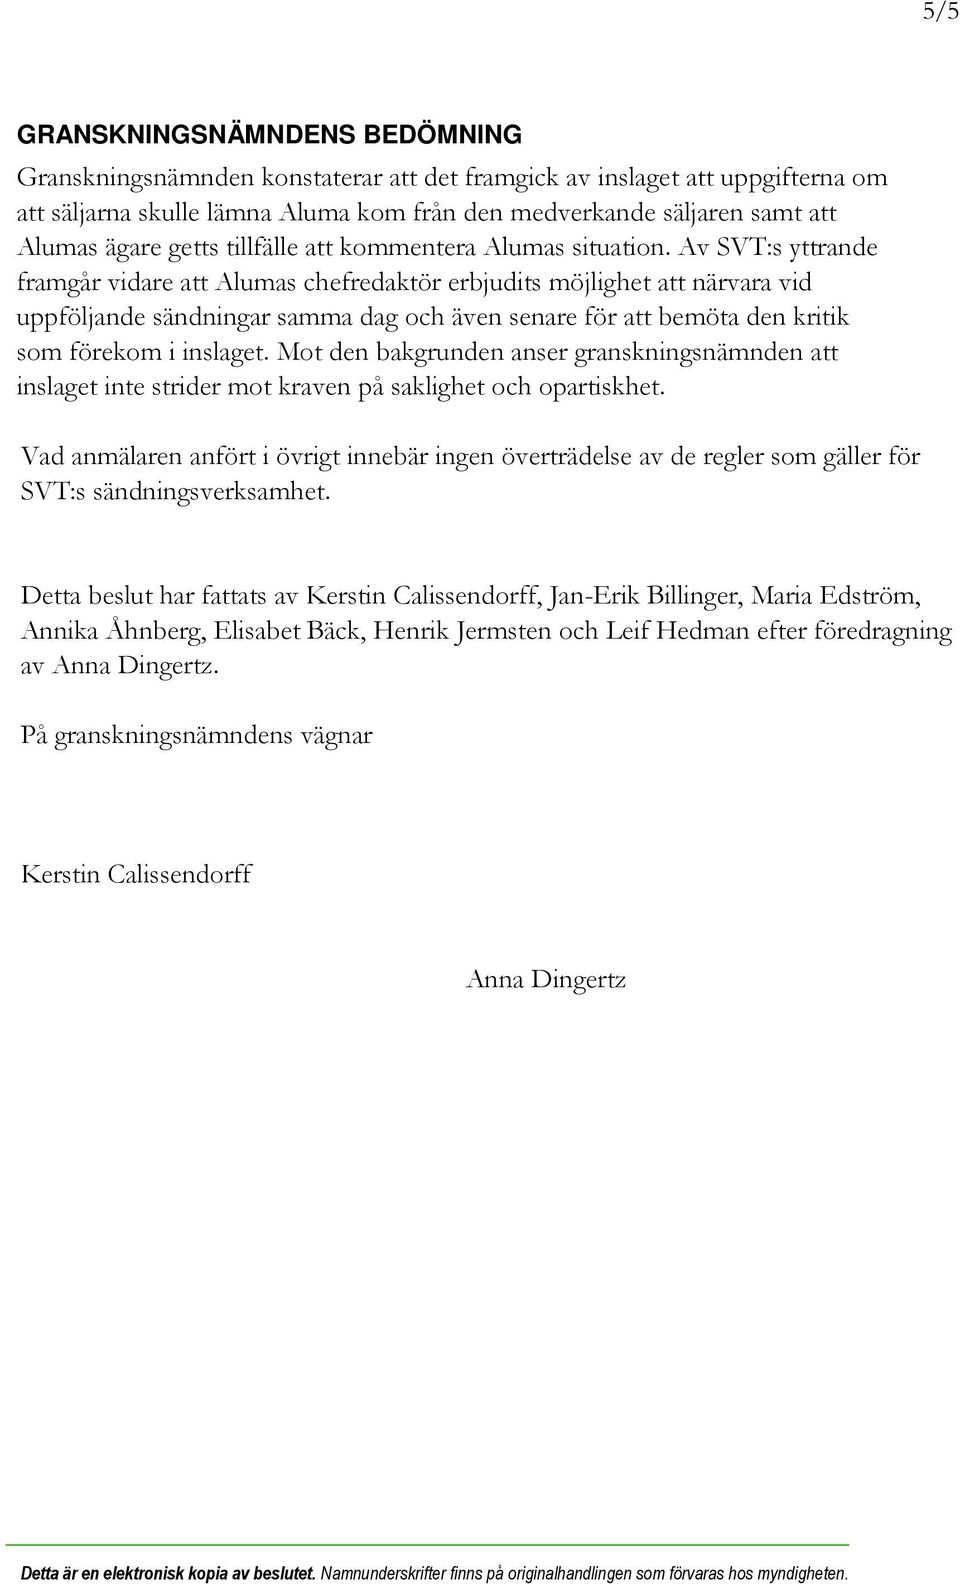 Av SVT:s yttrande framgår vidare att Alumas chefredaktör erbjudits möjlighet att närvara vid uppföljande sändningar samma dag och även senare för att bemöta den kritik som förekom i inslaget.